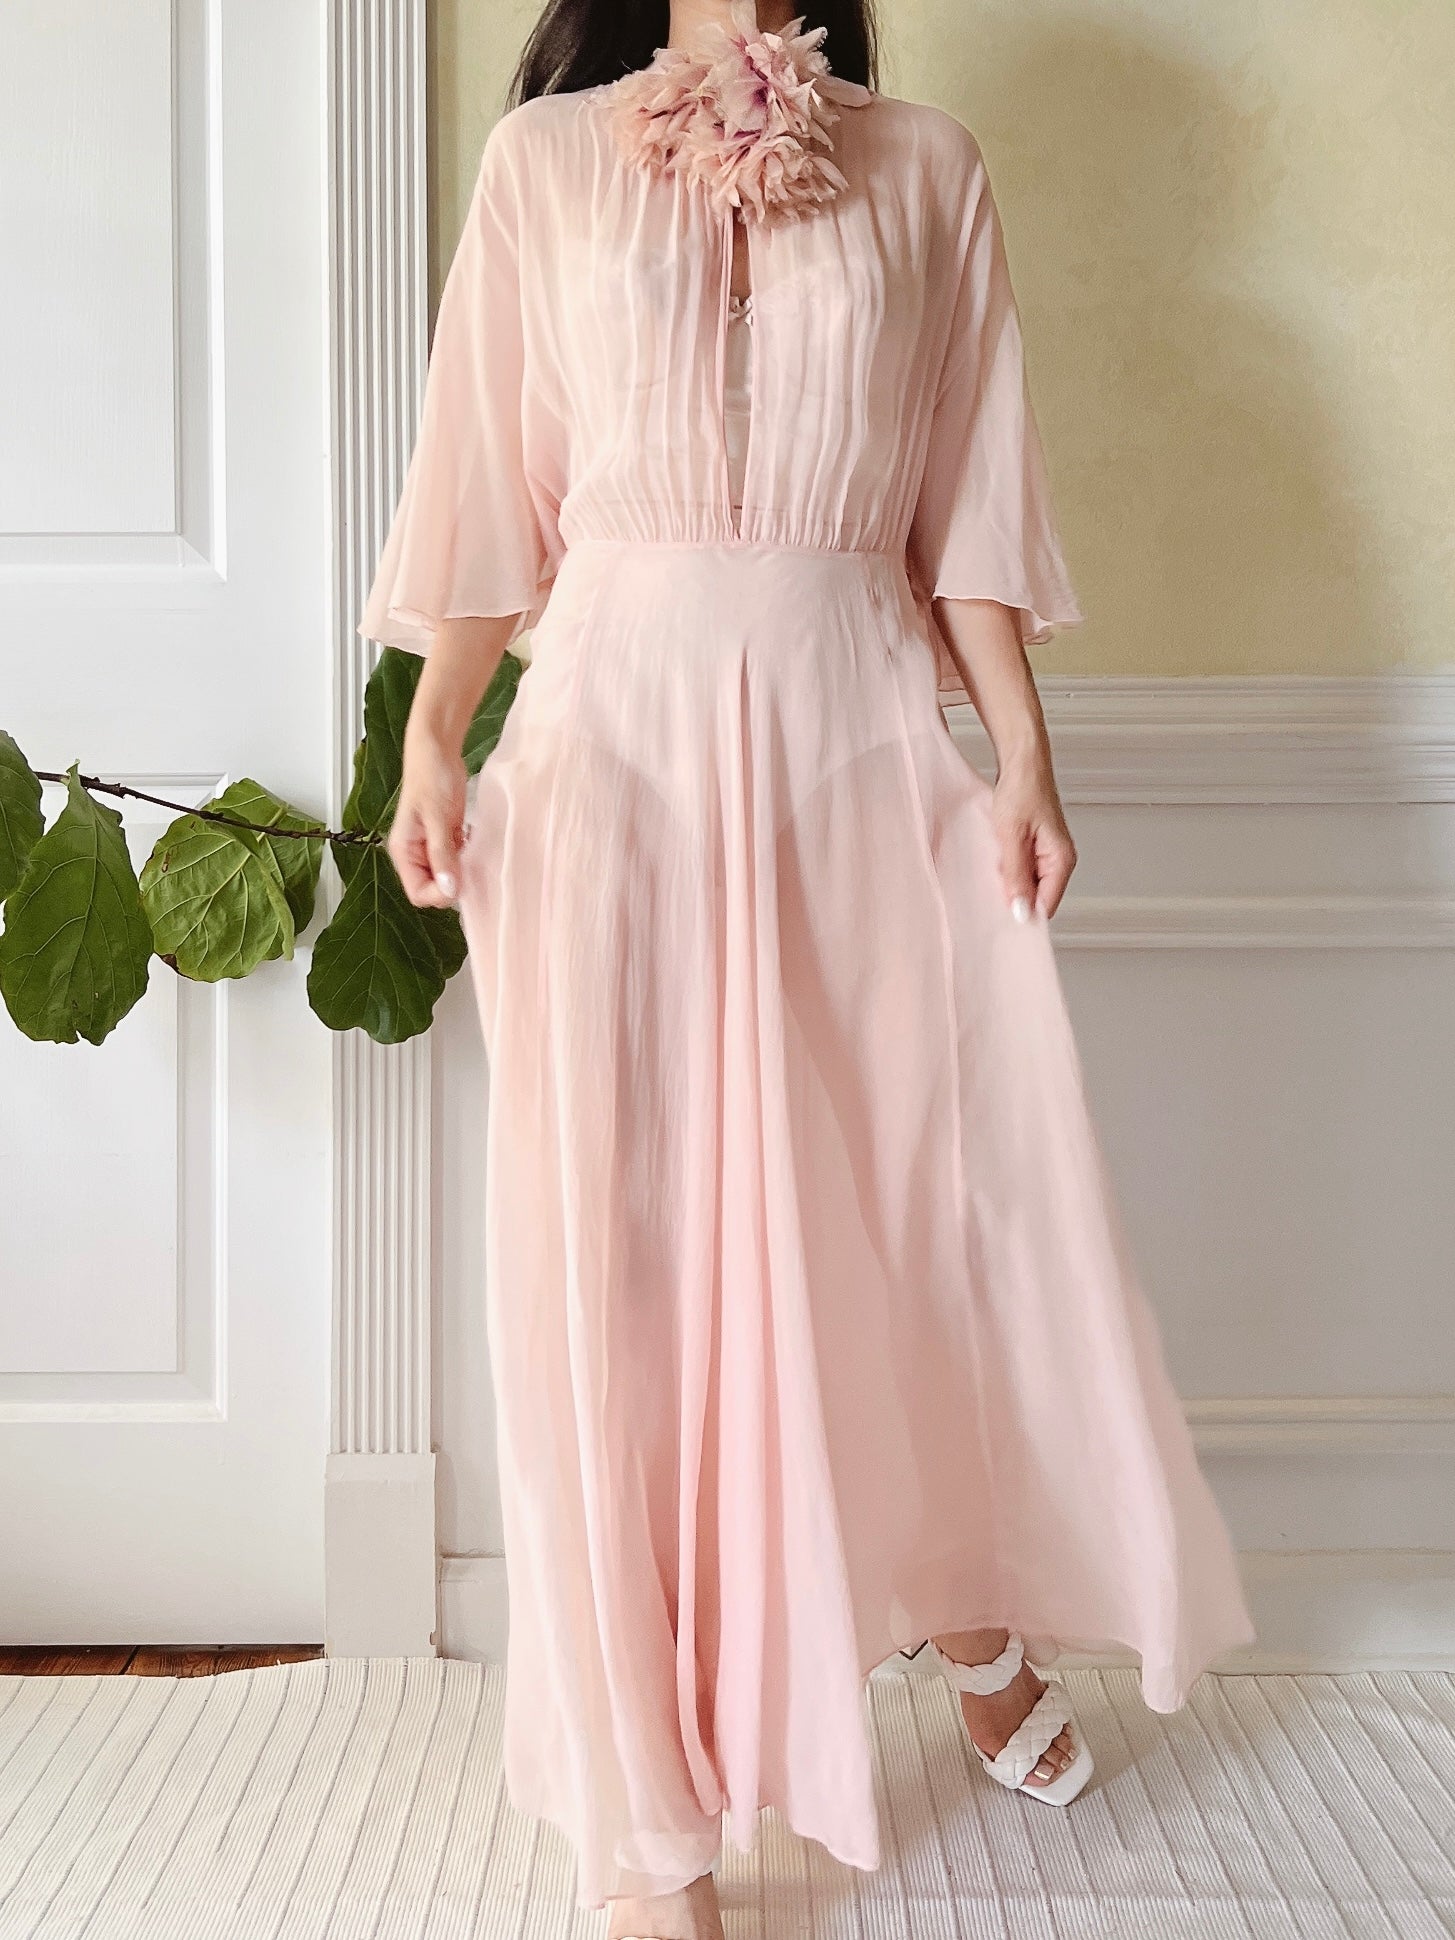 1930s Silk Chiffon Flutter Sleeve Dress - M